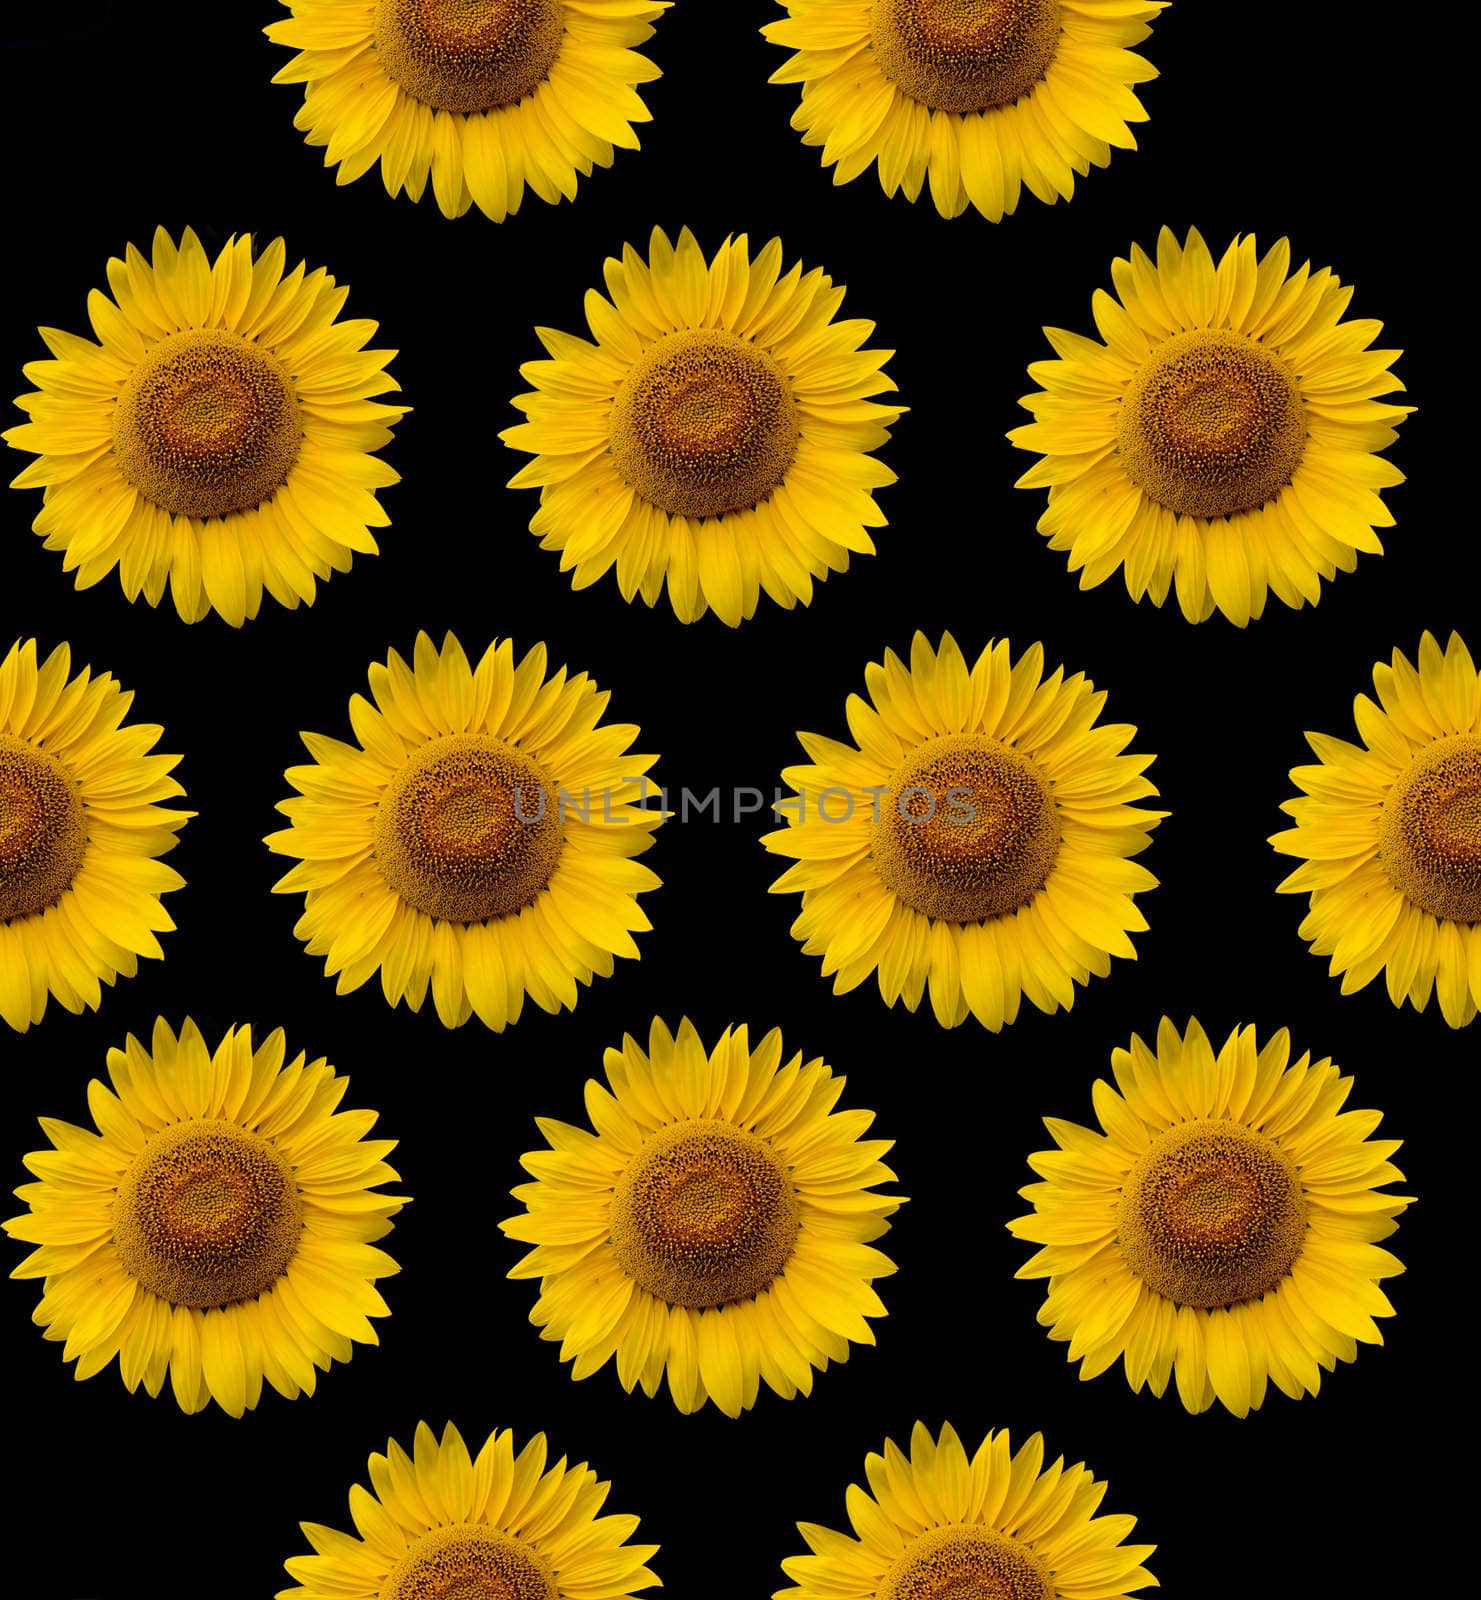 sunflower background by Baltus